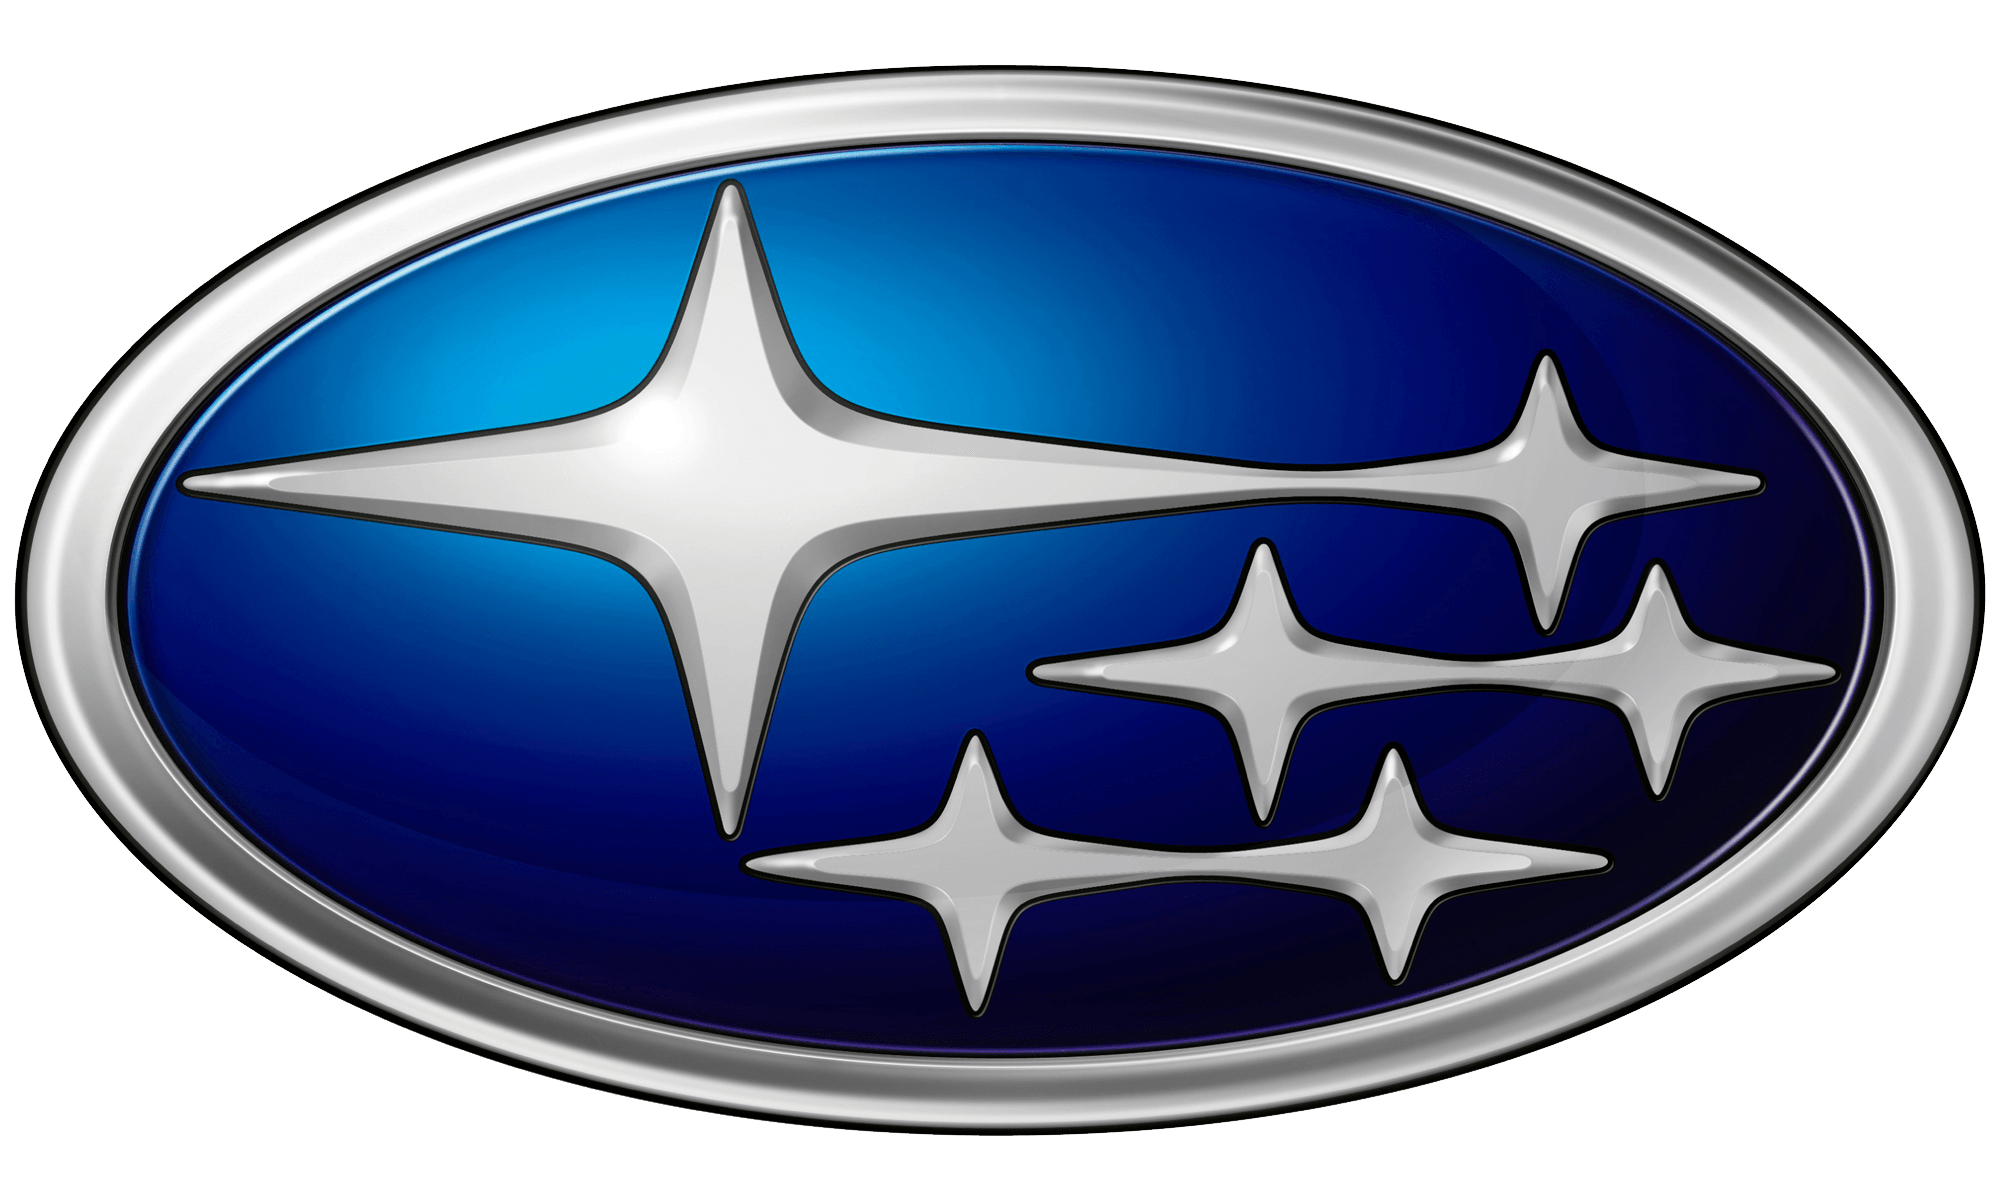 1998 Subaru Forester Logo Bra